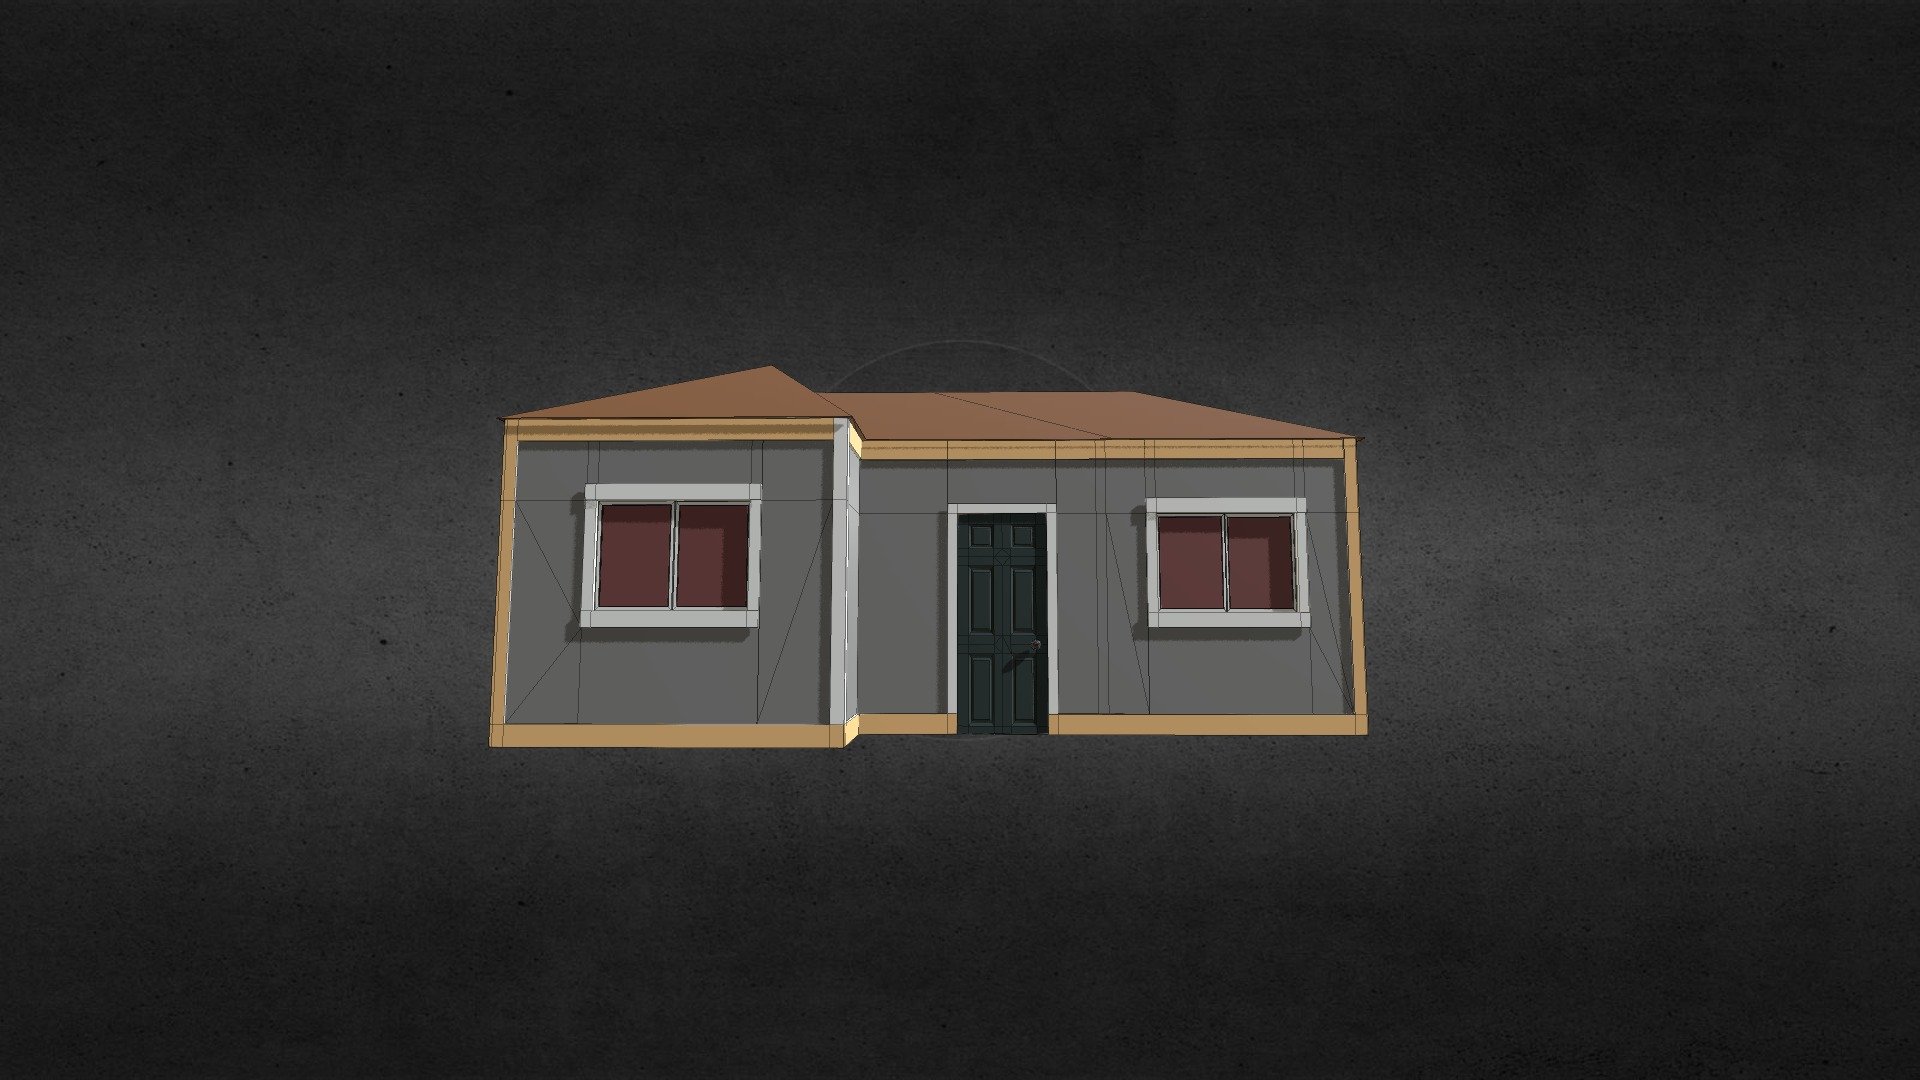 Basic House